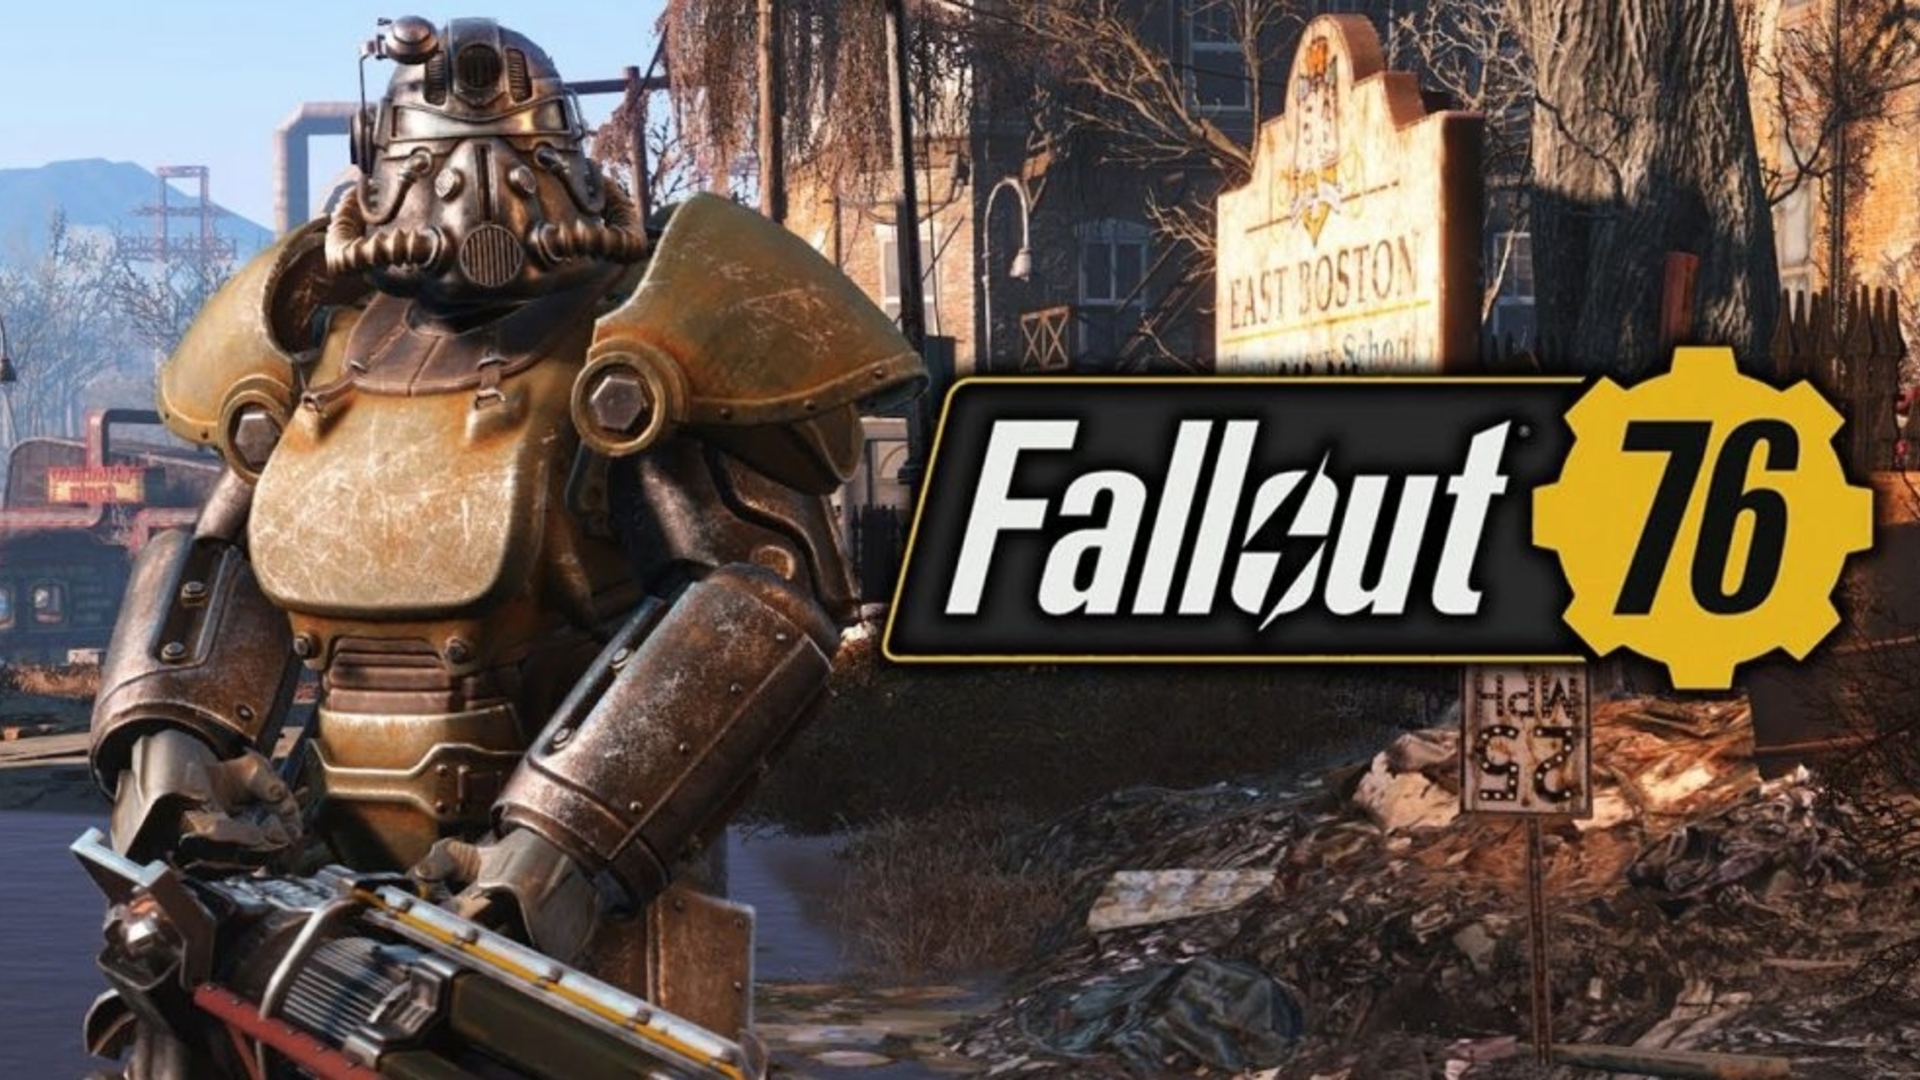 ทีมพัฒนายืนยัน! Fallout 76 จะไม่เปิดให้เล่นแบบ Free-To-Play แน่นอน